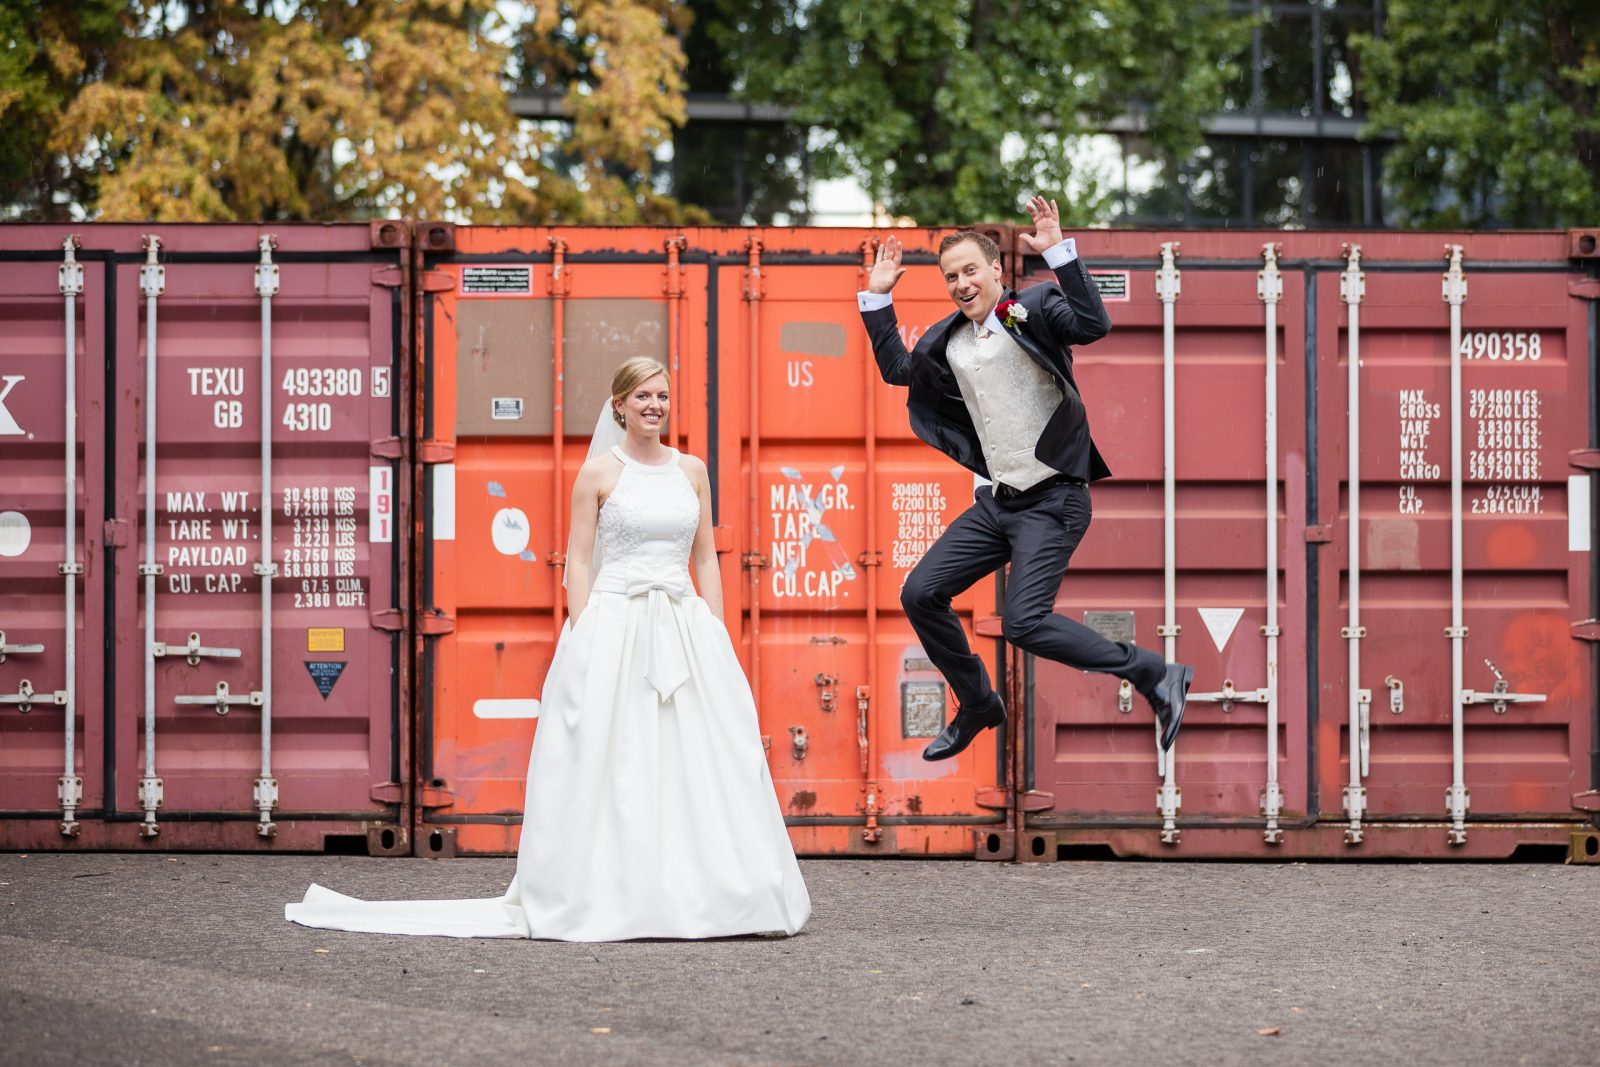 Fotoshooting Brautpaar Hochzeit